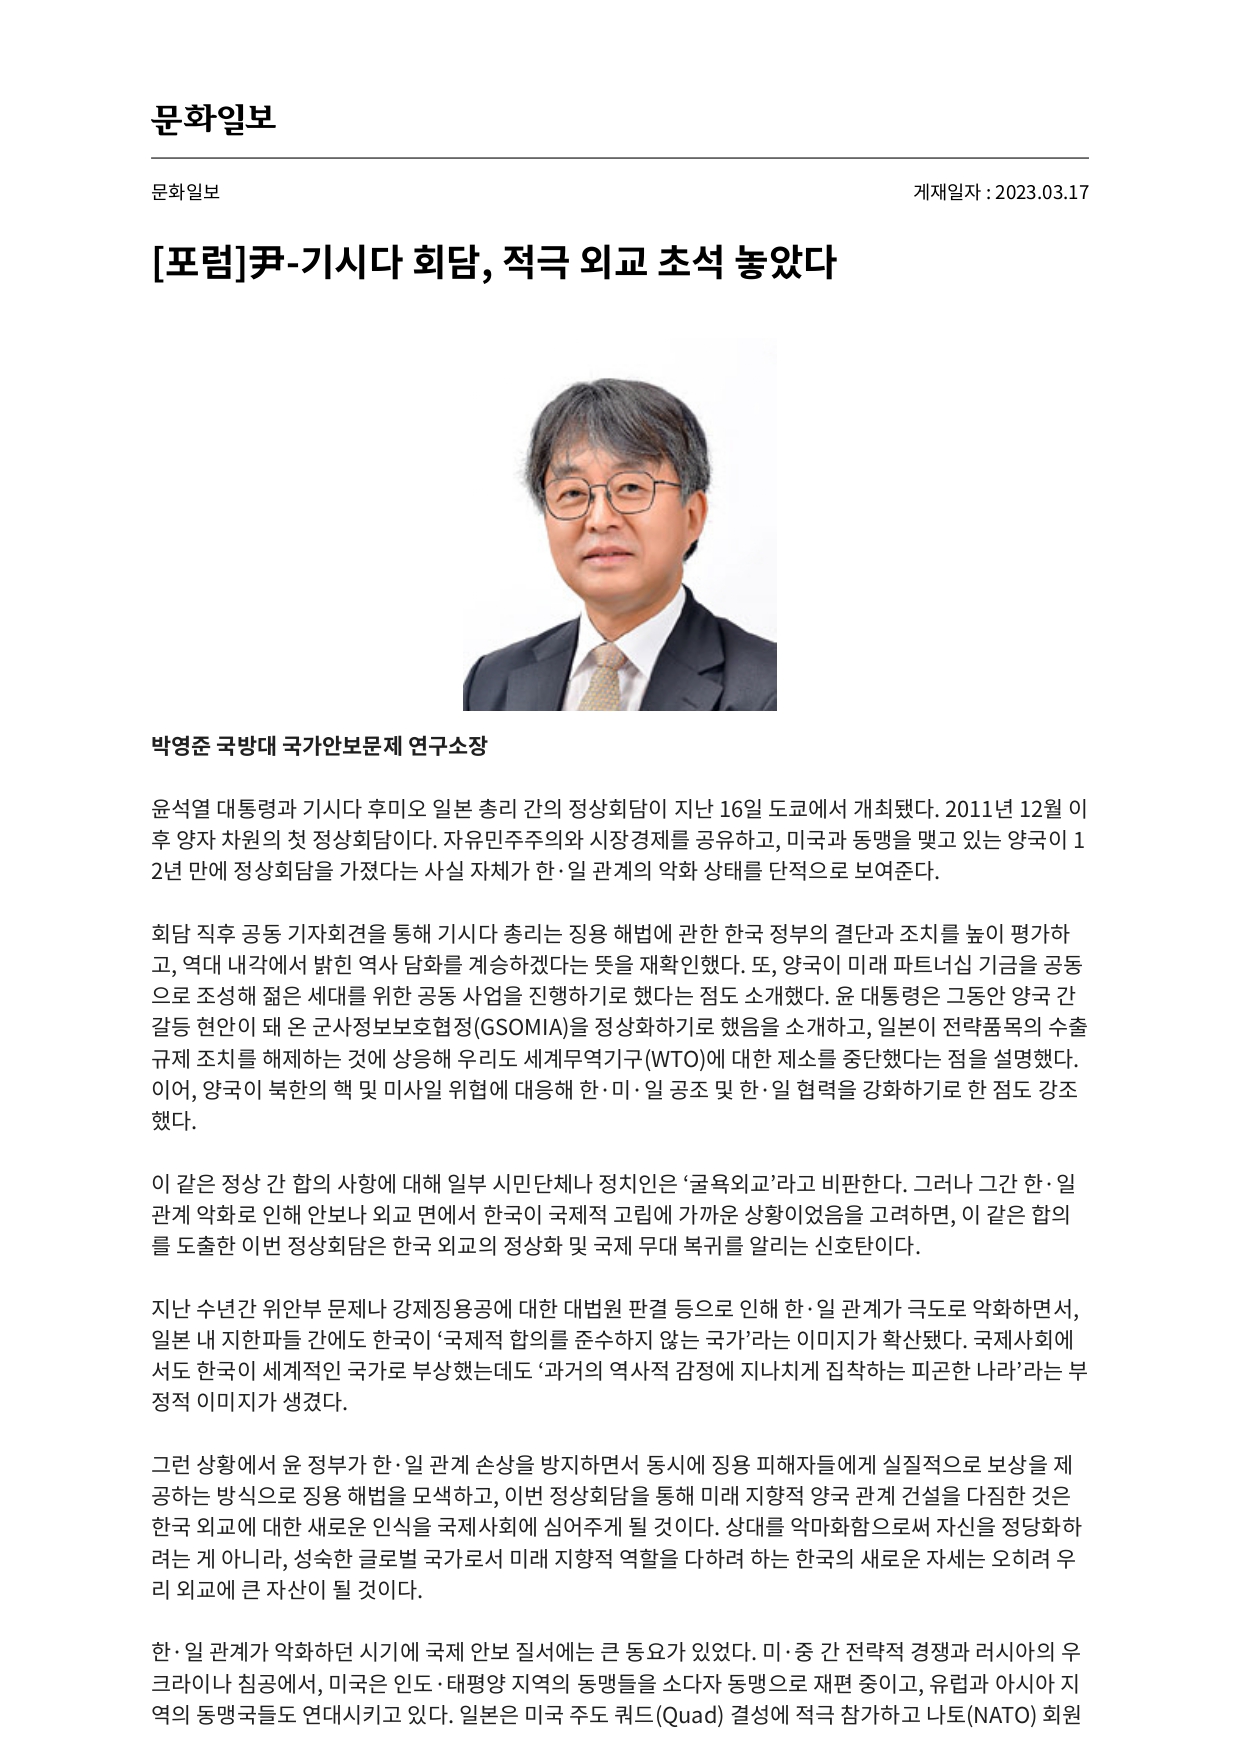 (문화일보 포럼-박영준 소장) ...